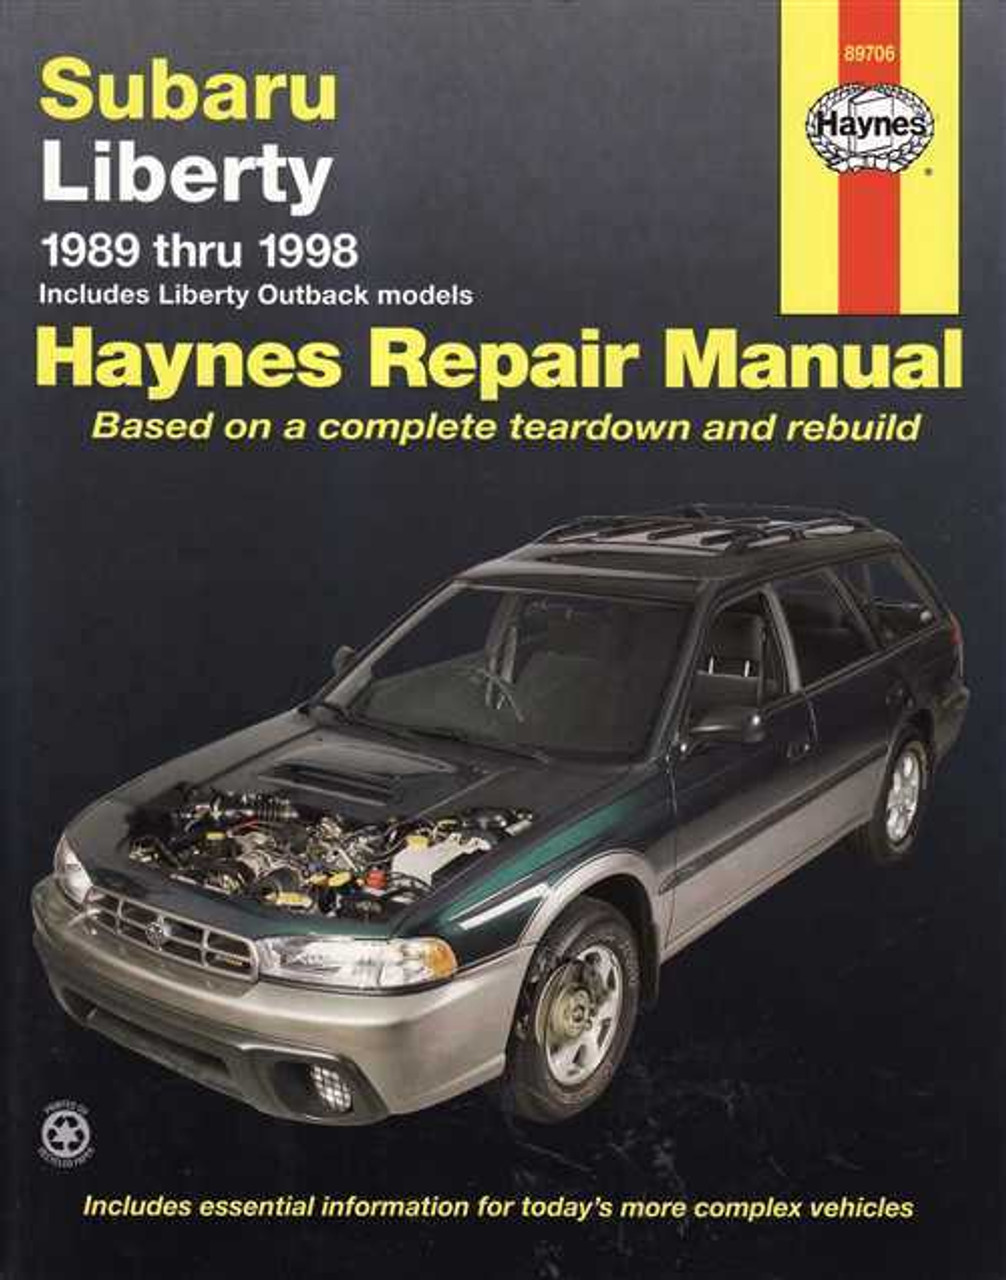 Subaru Liberty 1989 - 1998 Workshop Manual